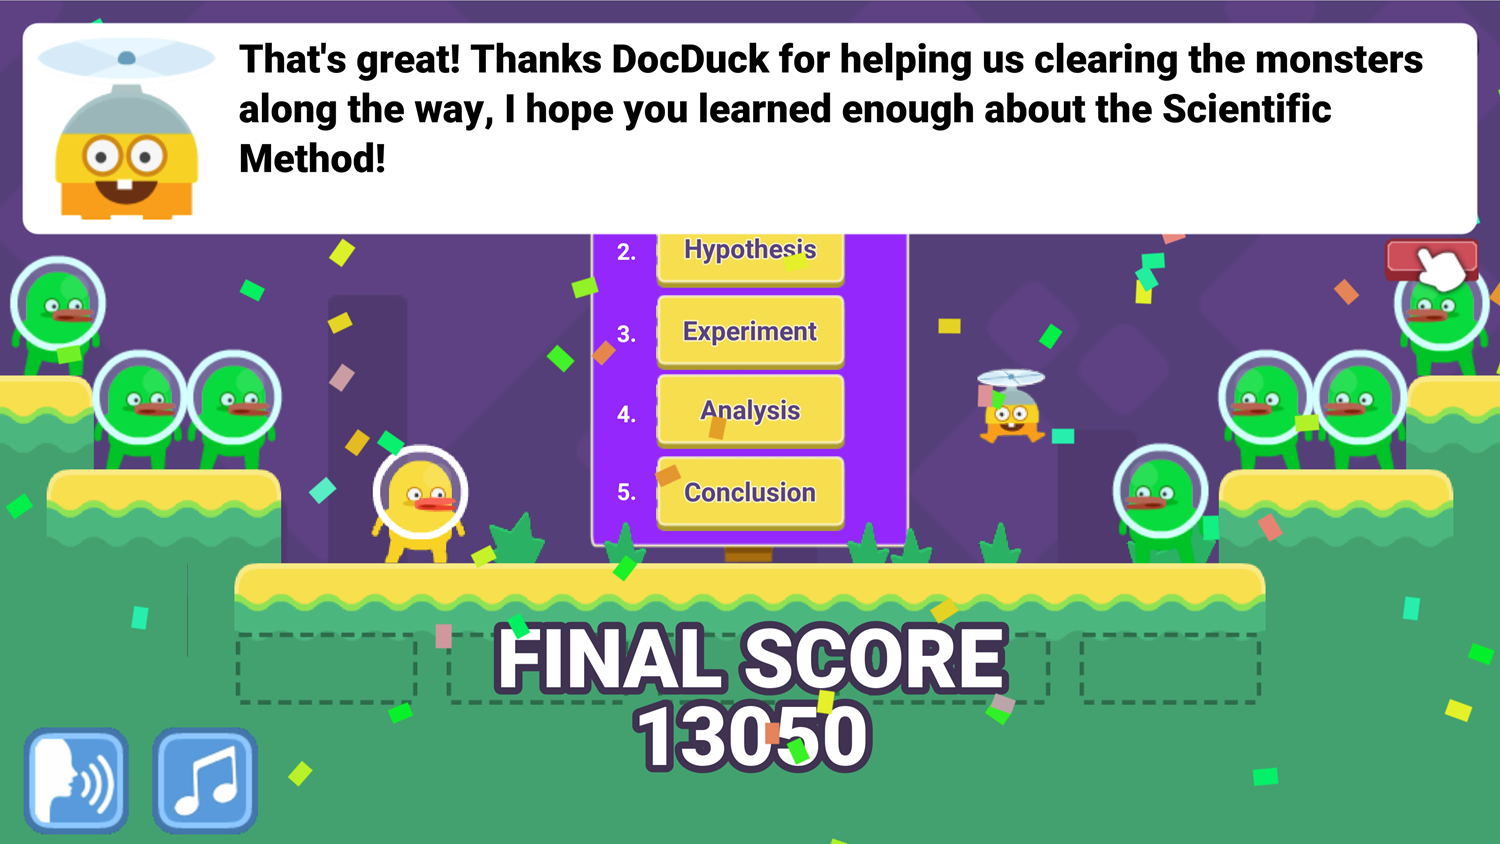 DocDuck Scientific Method Game Over Screen Screenshot.